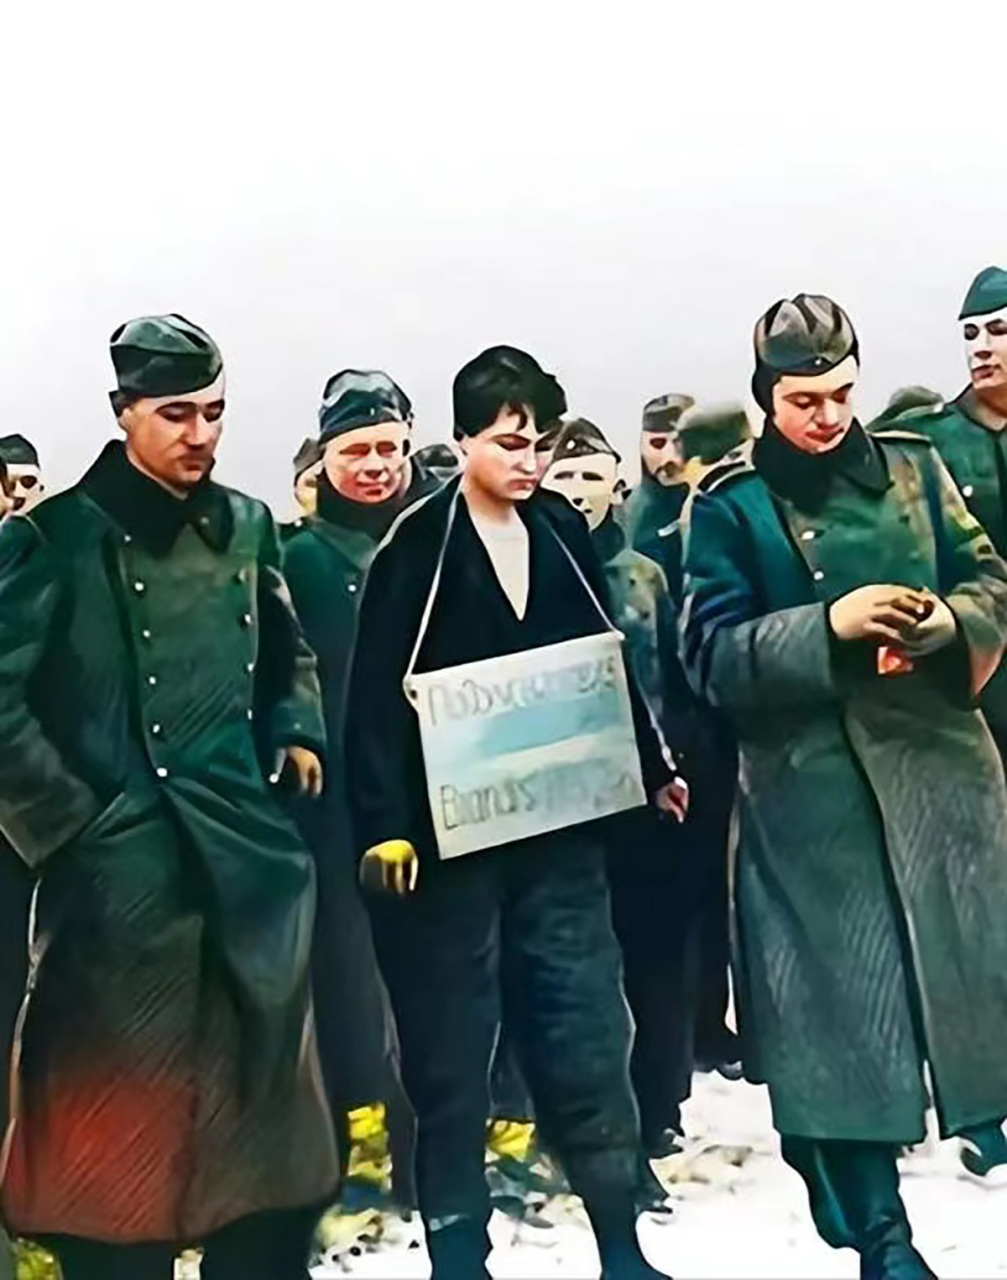 1941年,被德军俘虏的苏联女兵卓娅,因为坚持不肯出卖战友,被敌军残忍